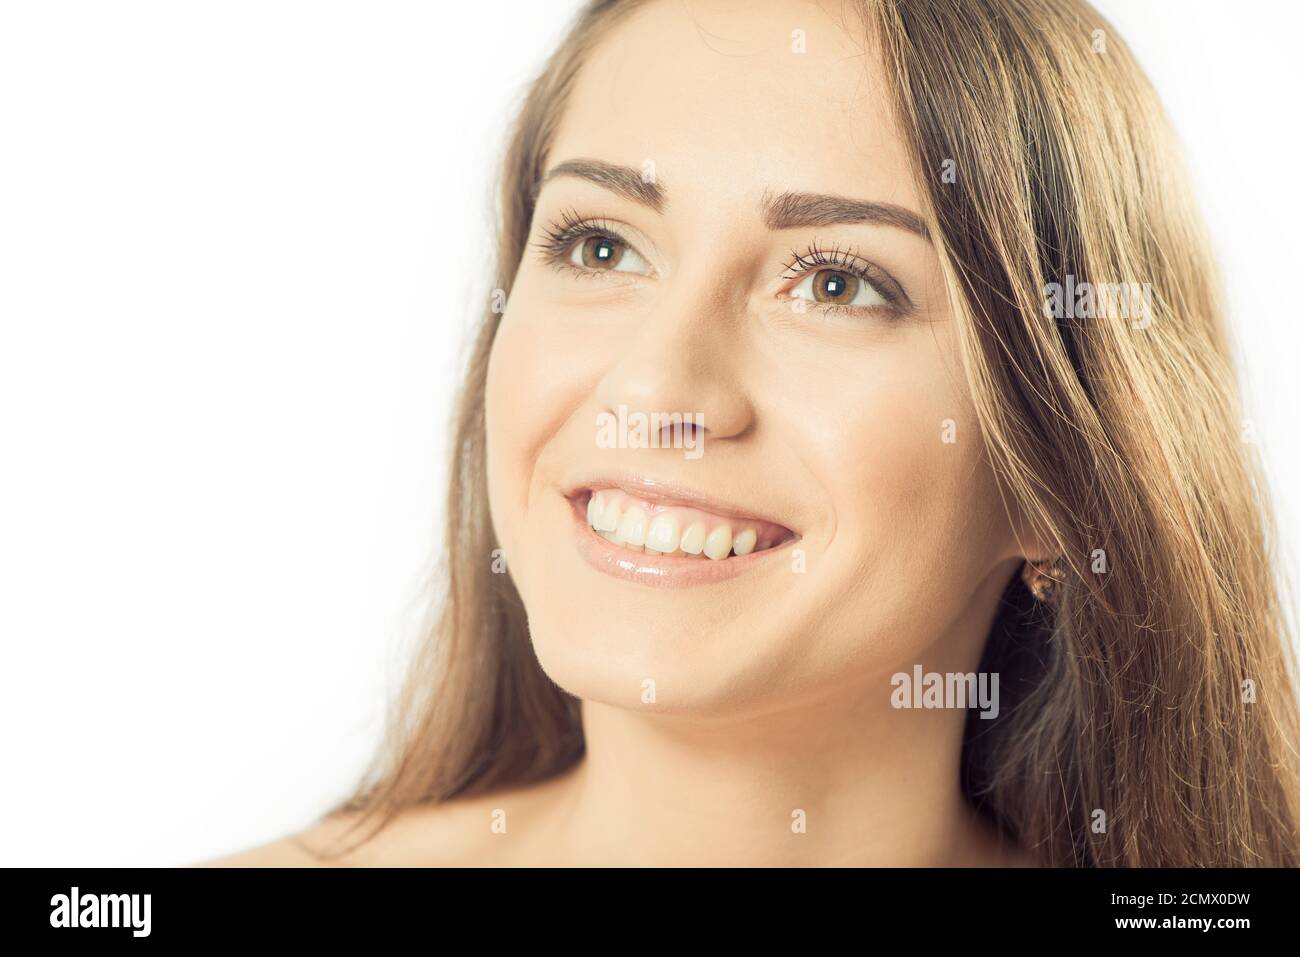 Giovane donna brunetto ritratto con emozioni espressive Foto Stock